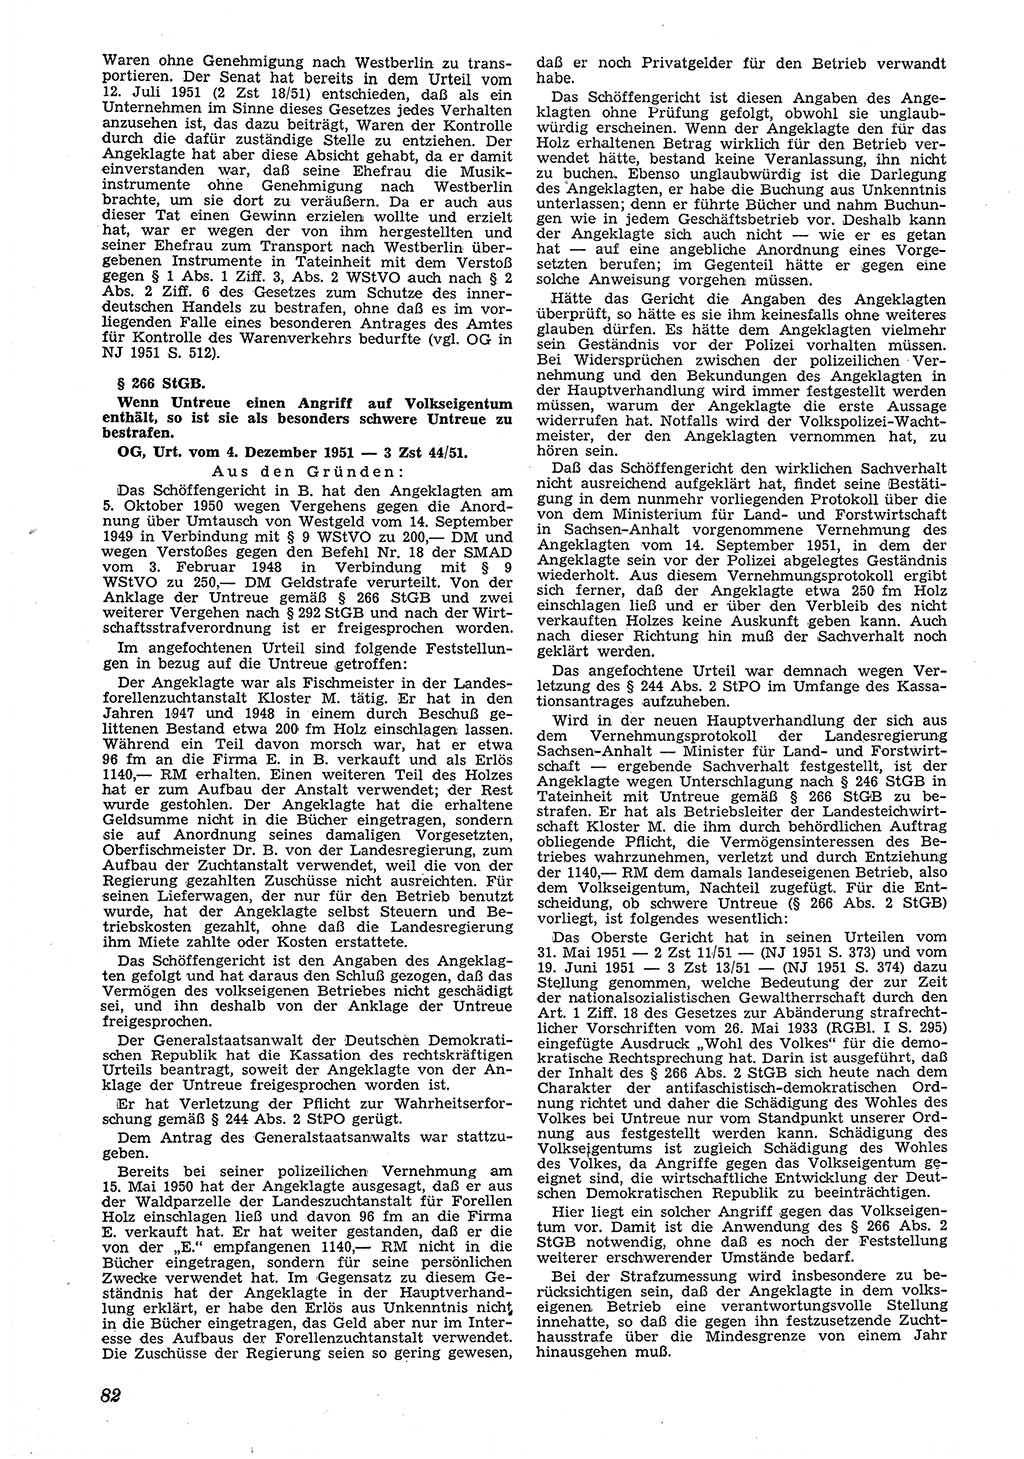 Neue Justiz (NJ), Zeitschrift für Recht und Rechtswissenschaft [Deutsche Demokratische Republik (DDR)], 6. Jahrgang 1952, Seite 82 (NJ DDR 1952, S. 82)